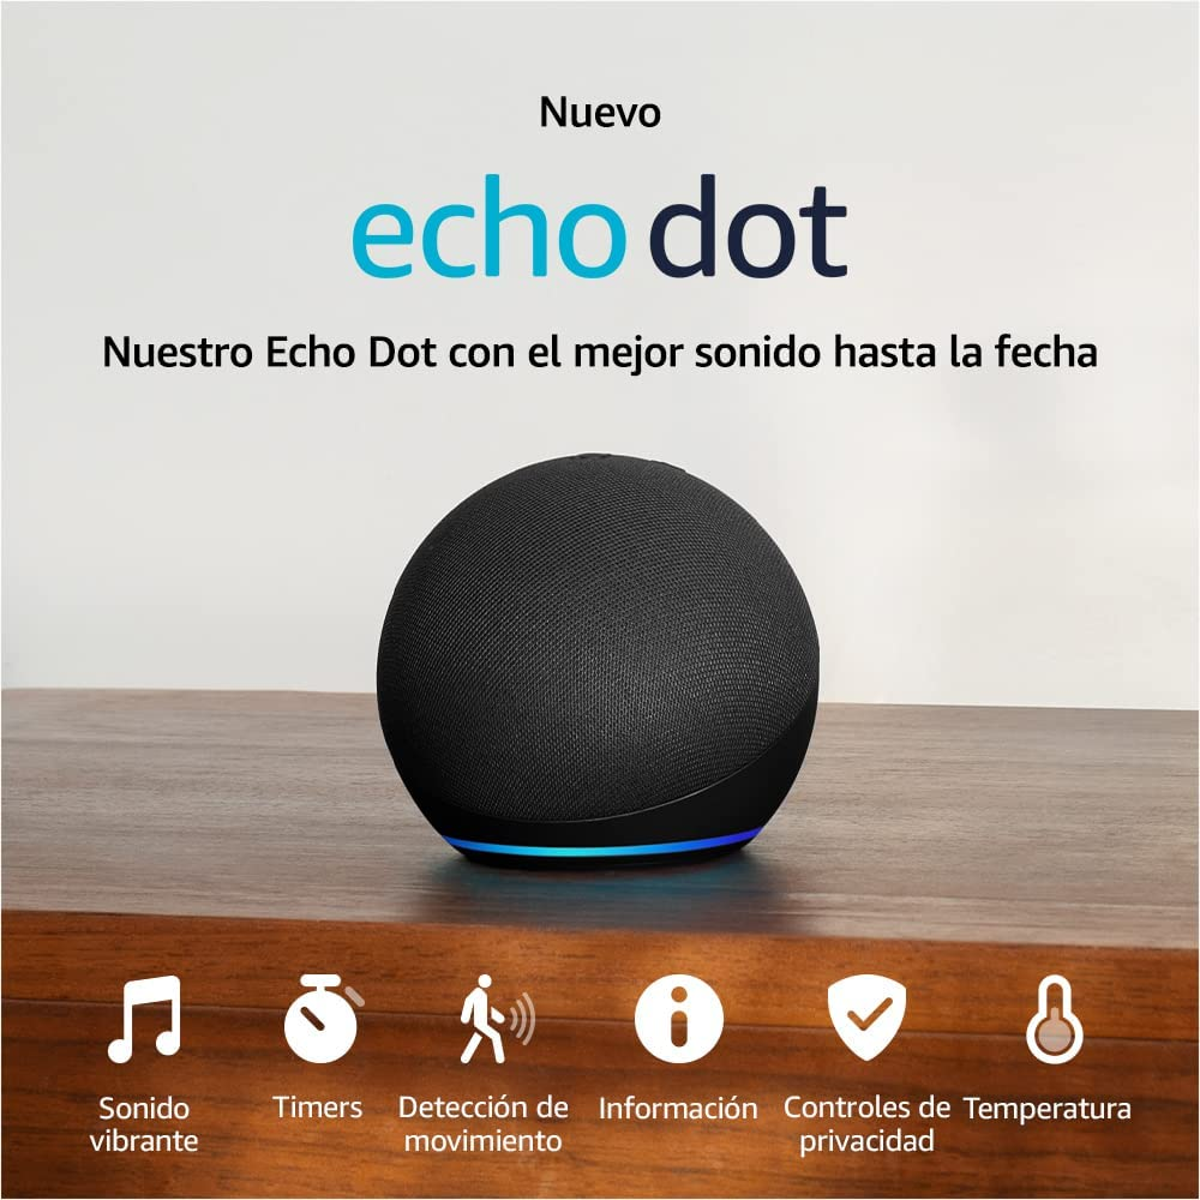 Echo Dot y Echo Dot con reloj: las más potentes de la familia Echo